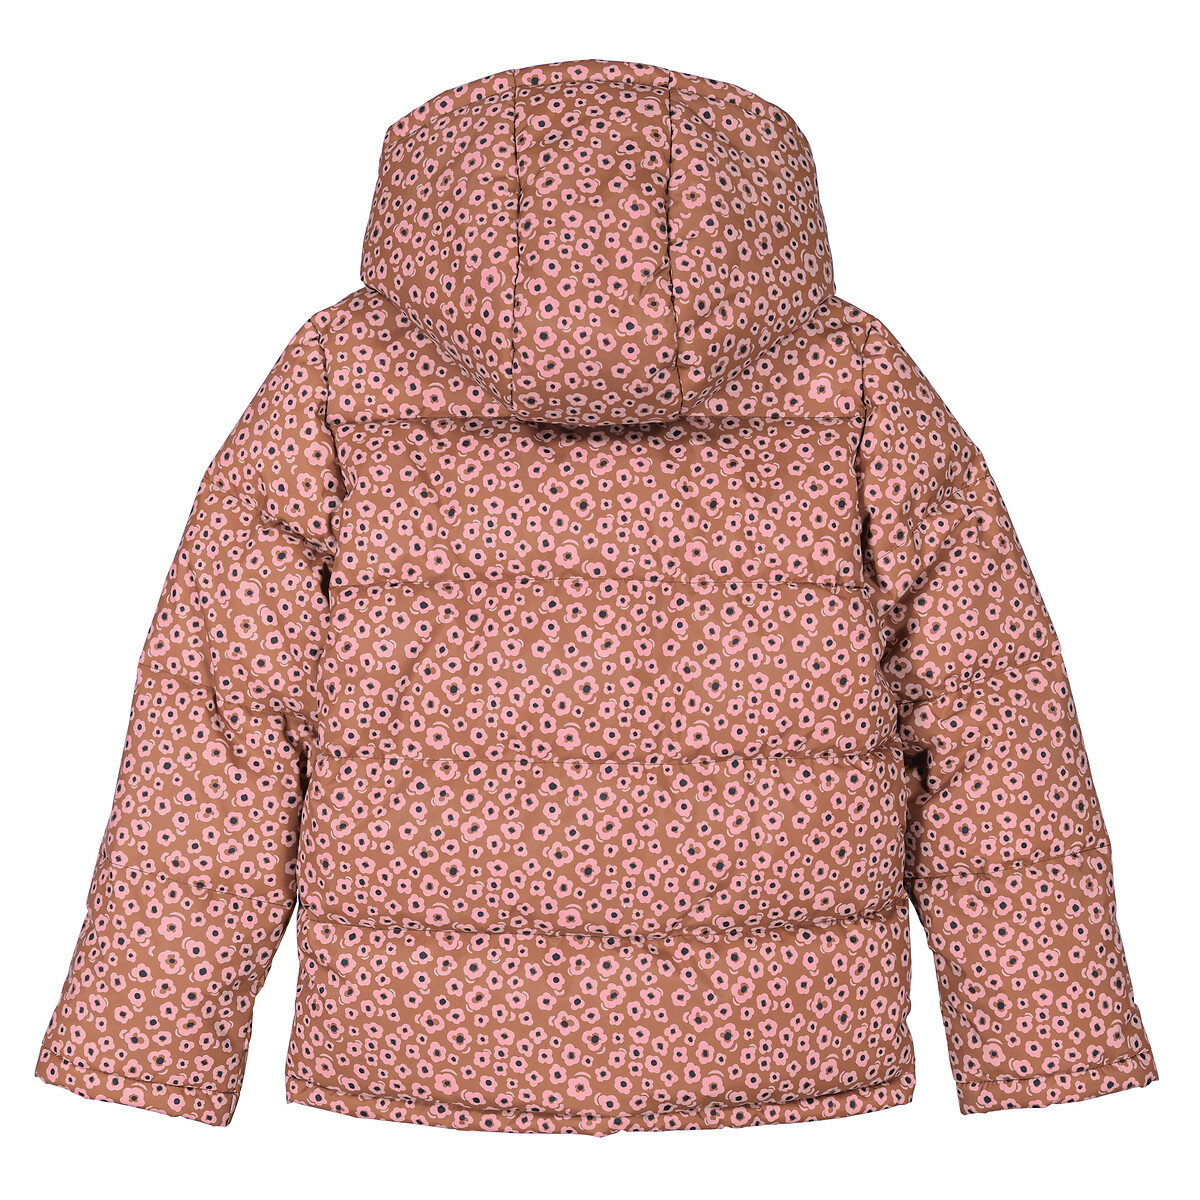 Куртка Стеганая утепленная с капюшоном цветочный принт 7 лет - 120 см каштановый LaRedoute, размер 7 лет - 120 см - фото 5